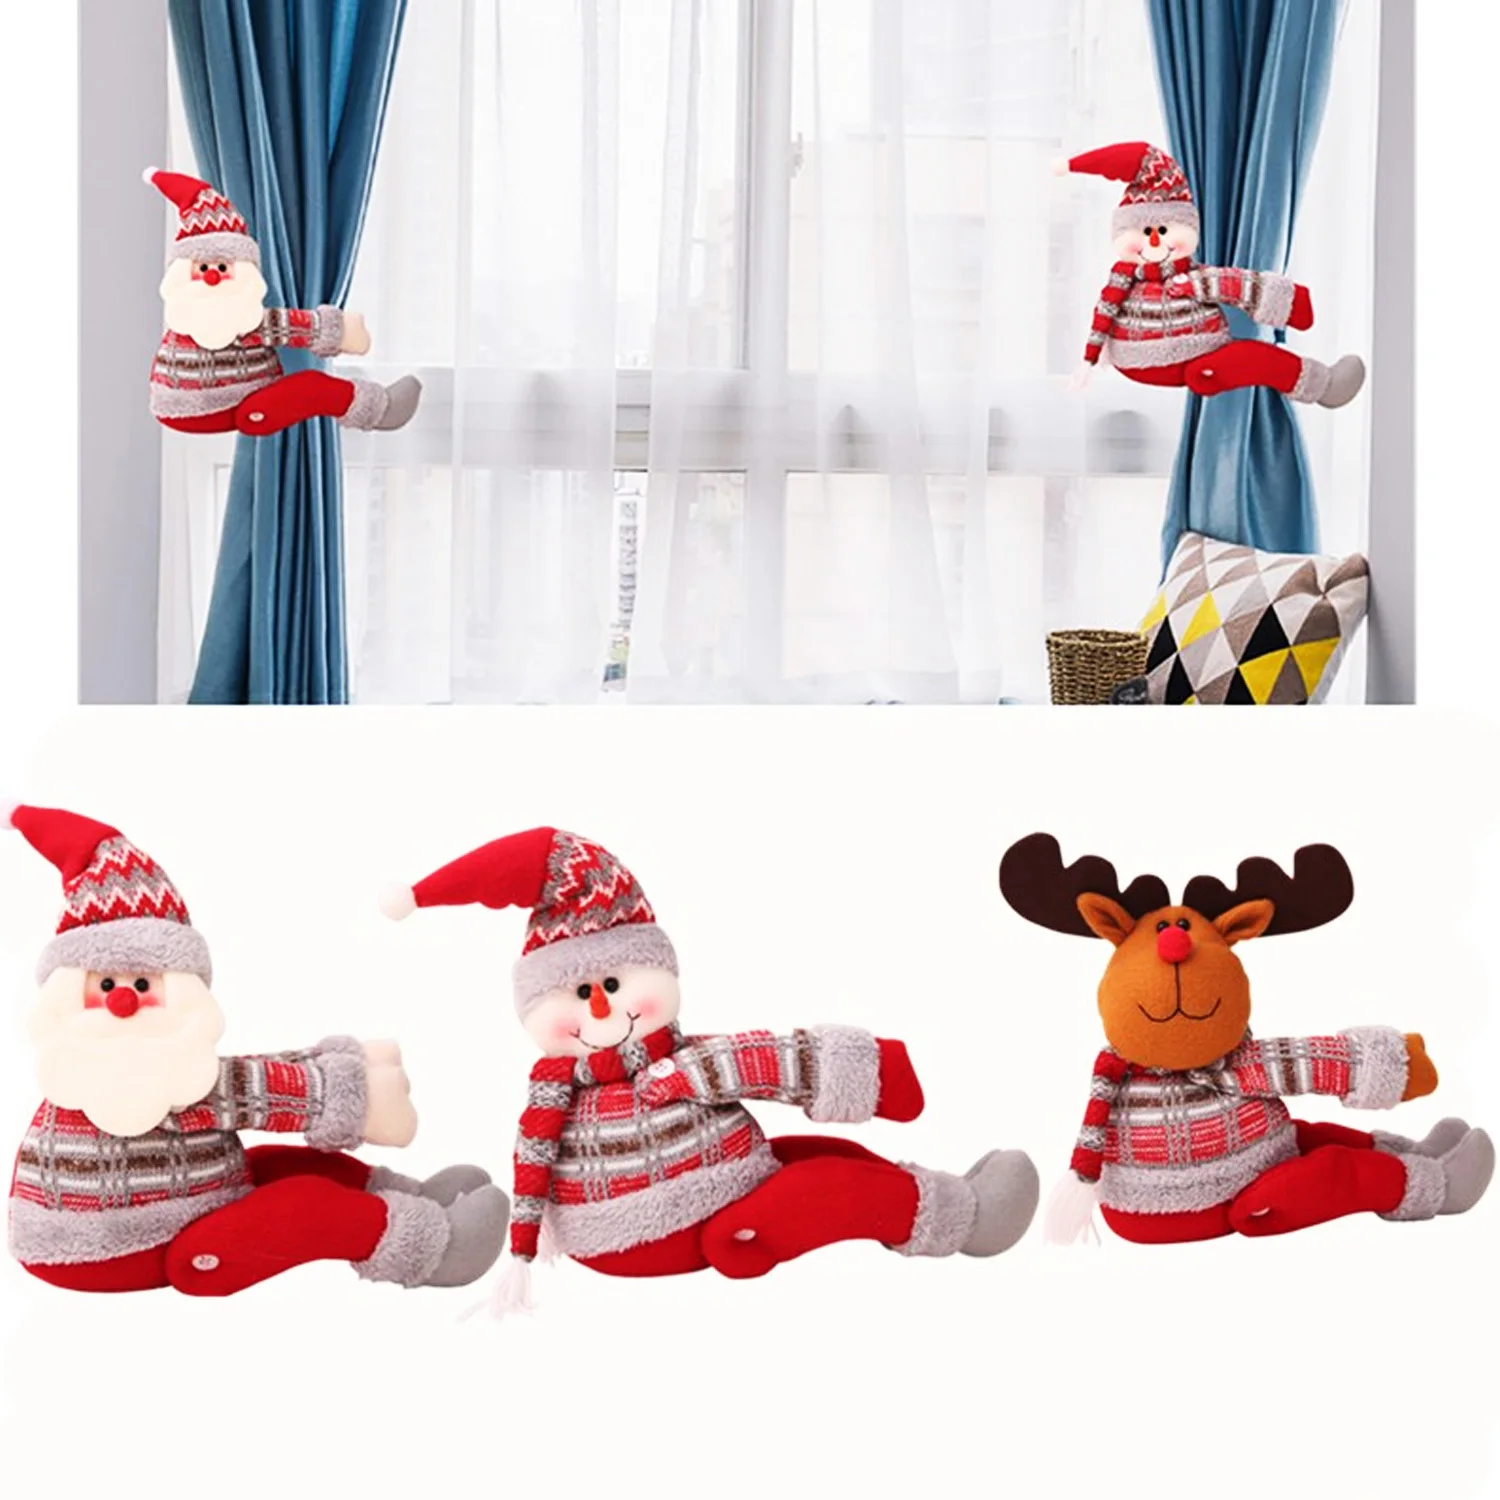 Милый Забавный Рождественский мультфильм Санта-Клаус Снеговик Лось кукла игрушки подарки занавеска Tieback окно Xmas фенечки игрушка подарок